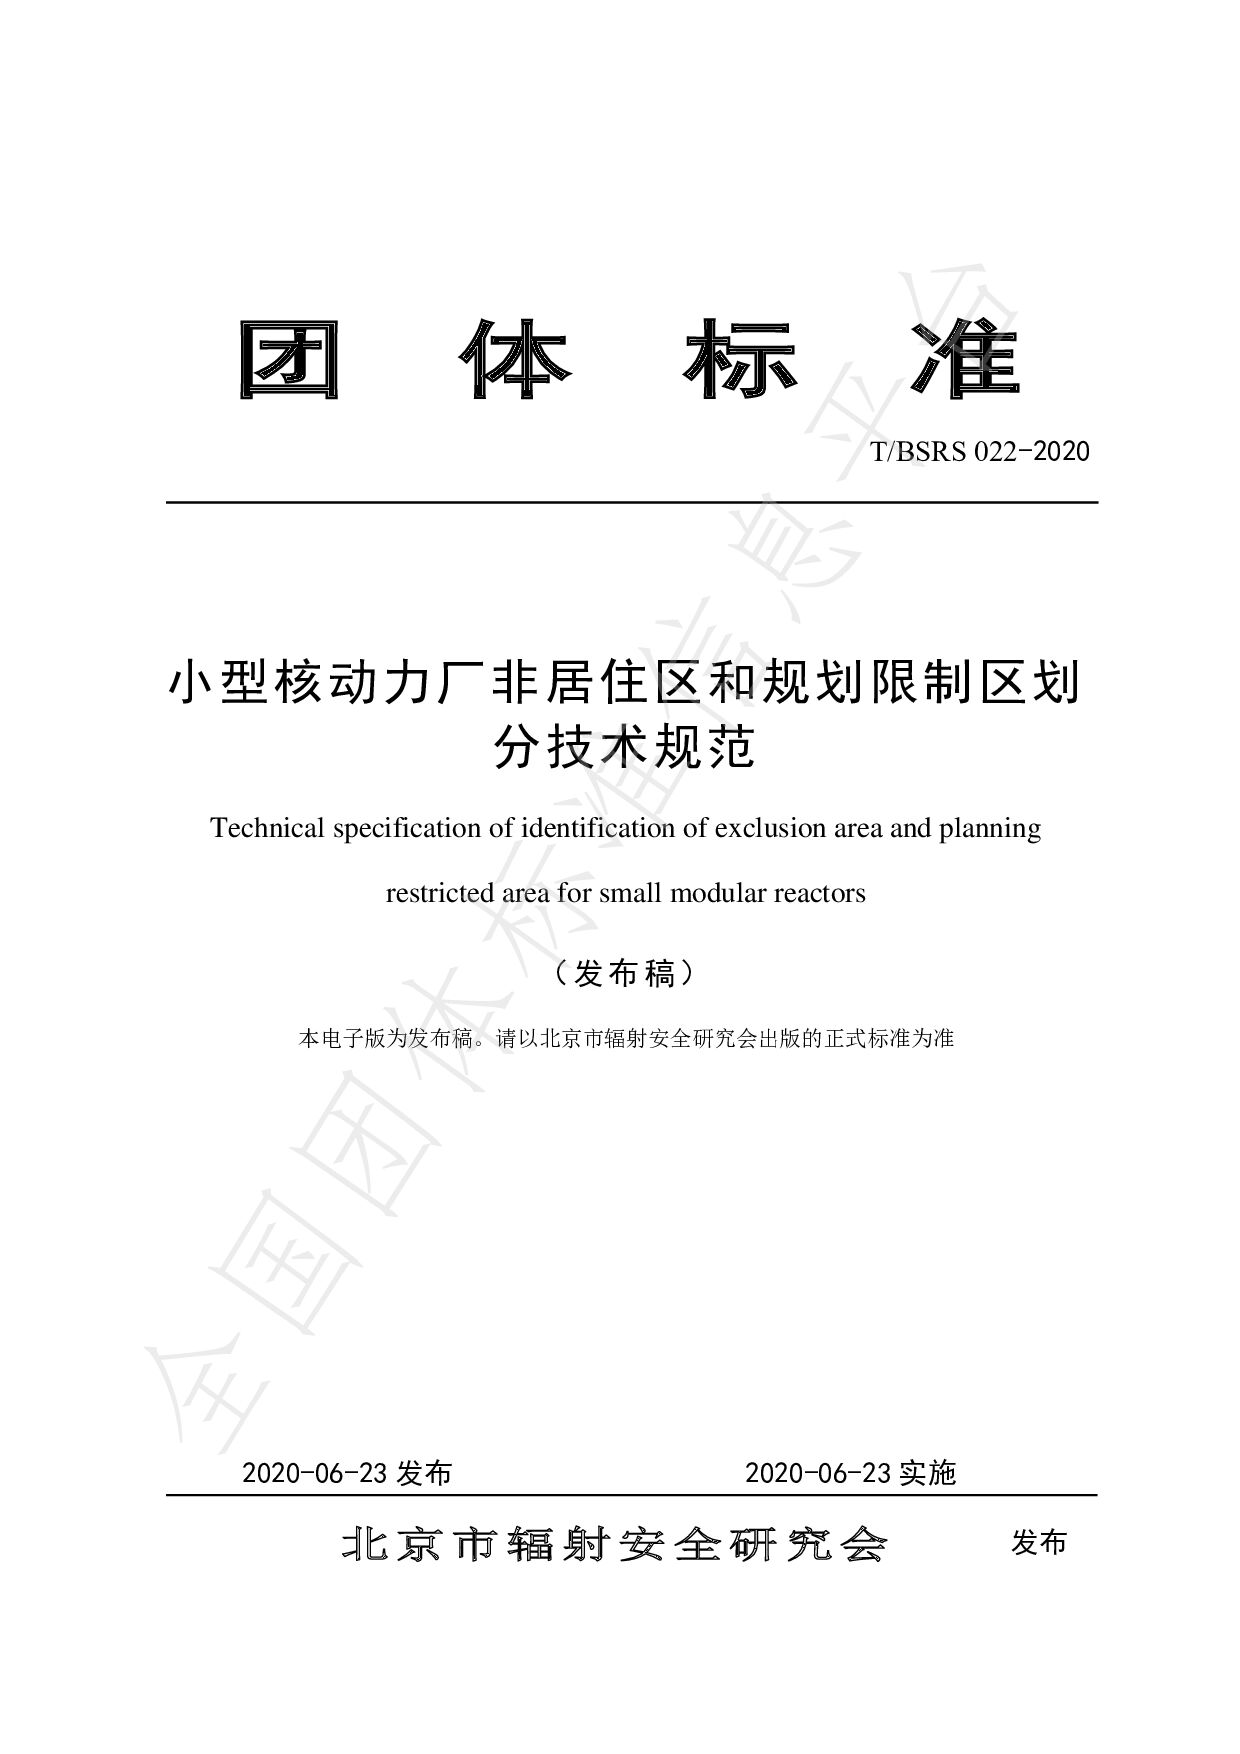 T/BSRS 022-2020封面图